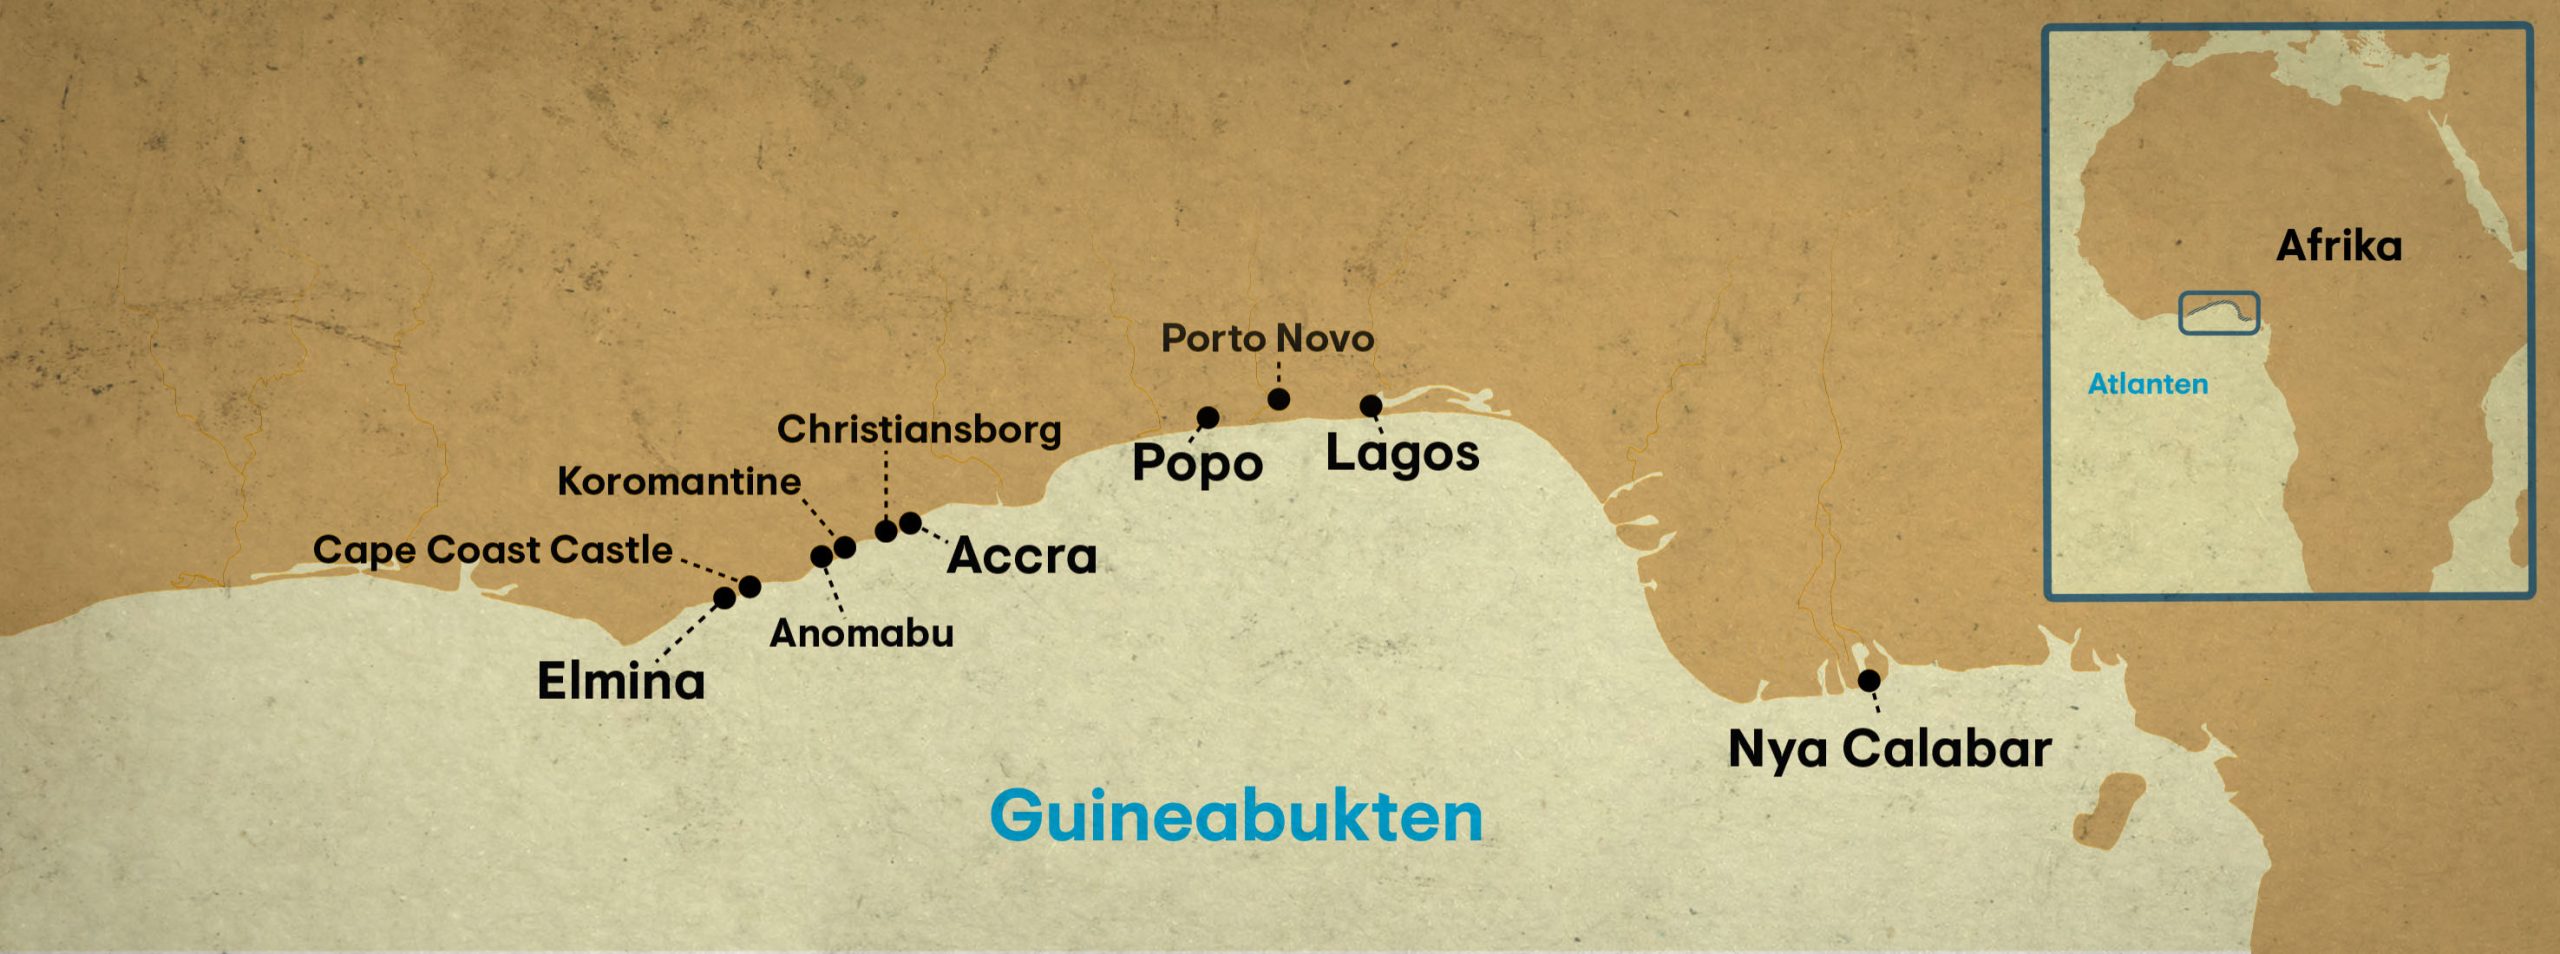 En karta över Guineabukten som visar olika västafrikanska kustorter.